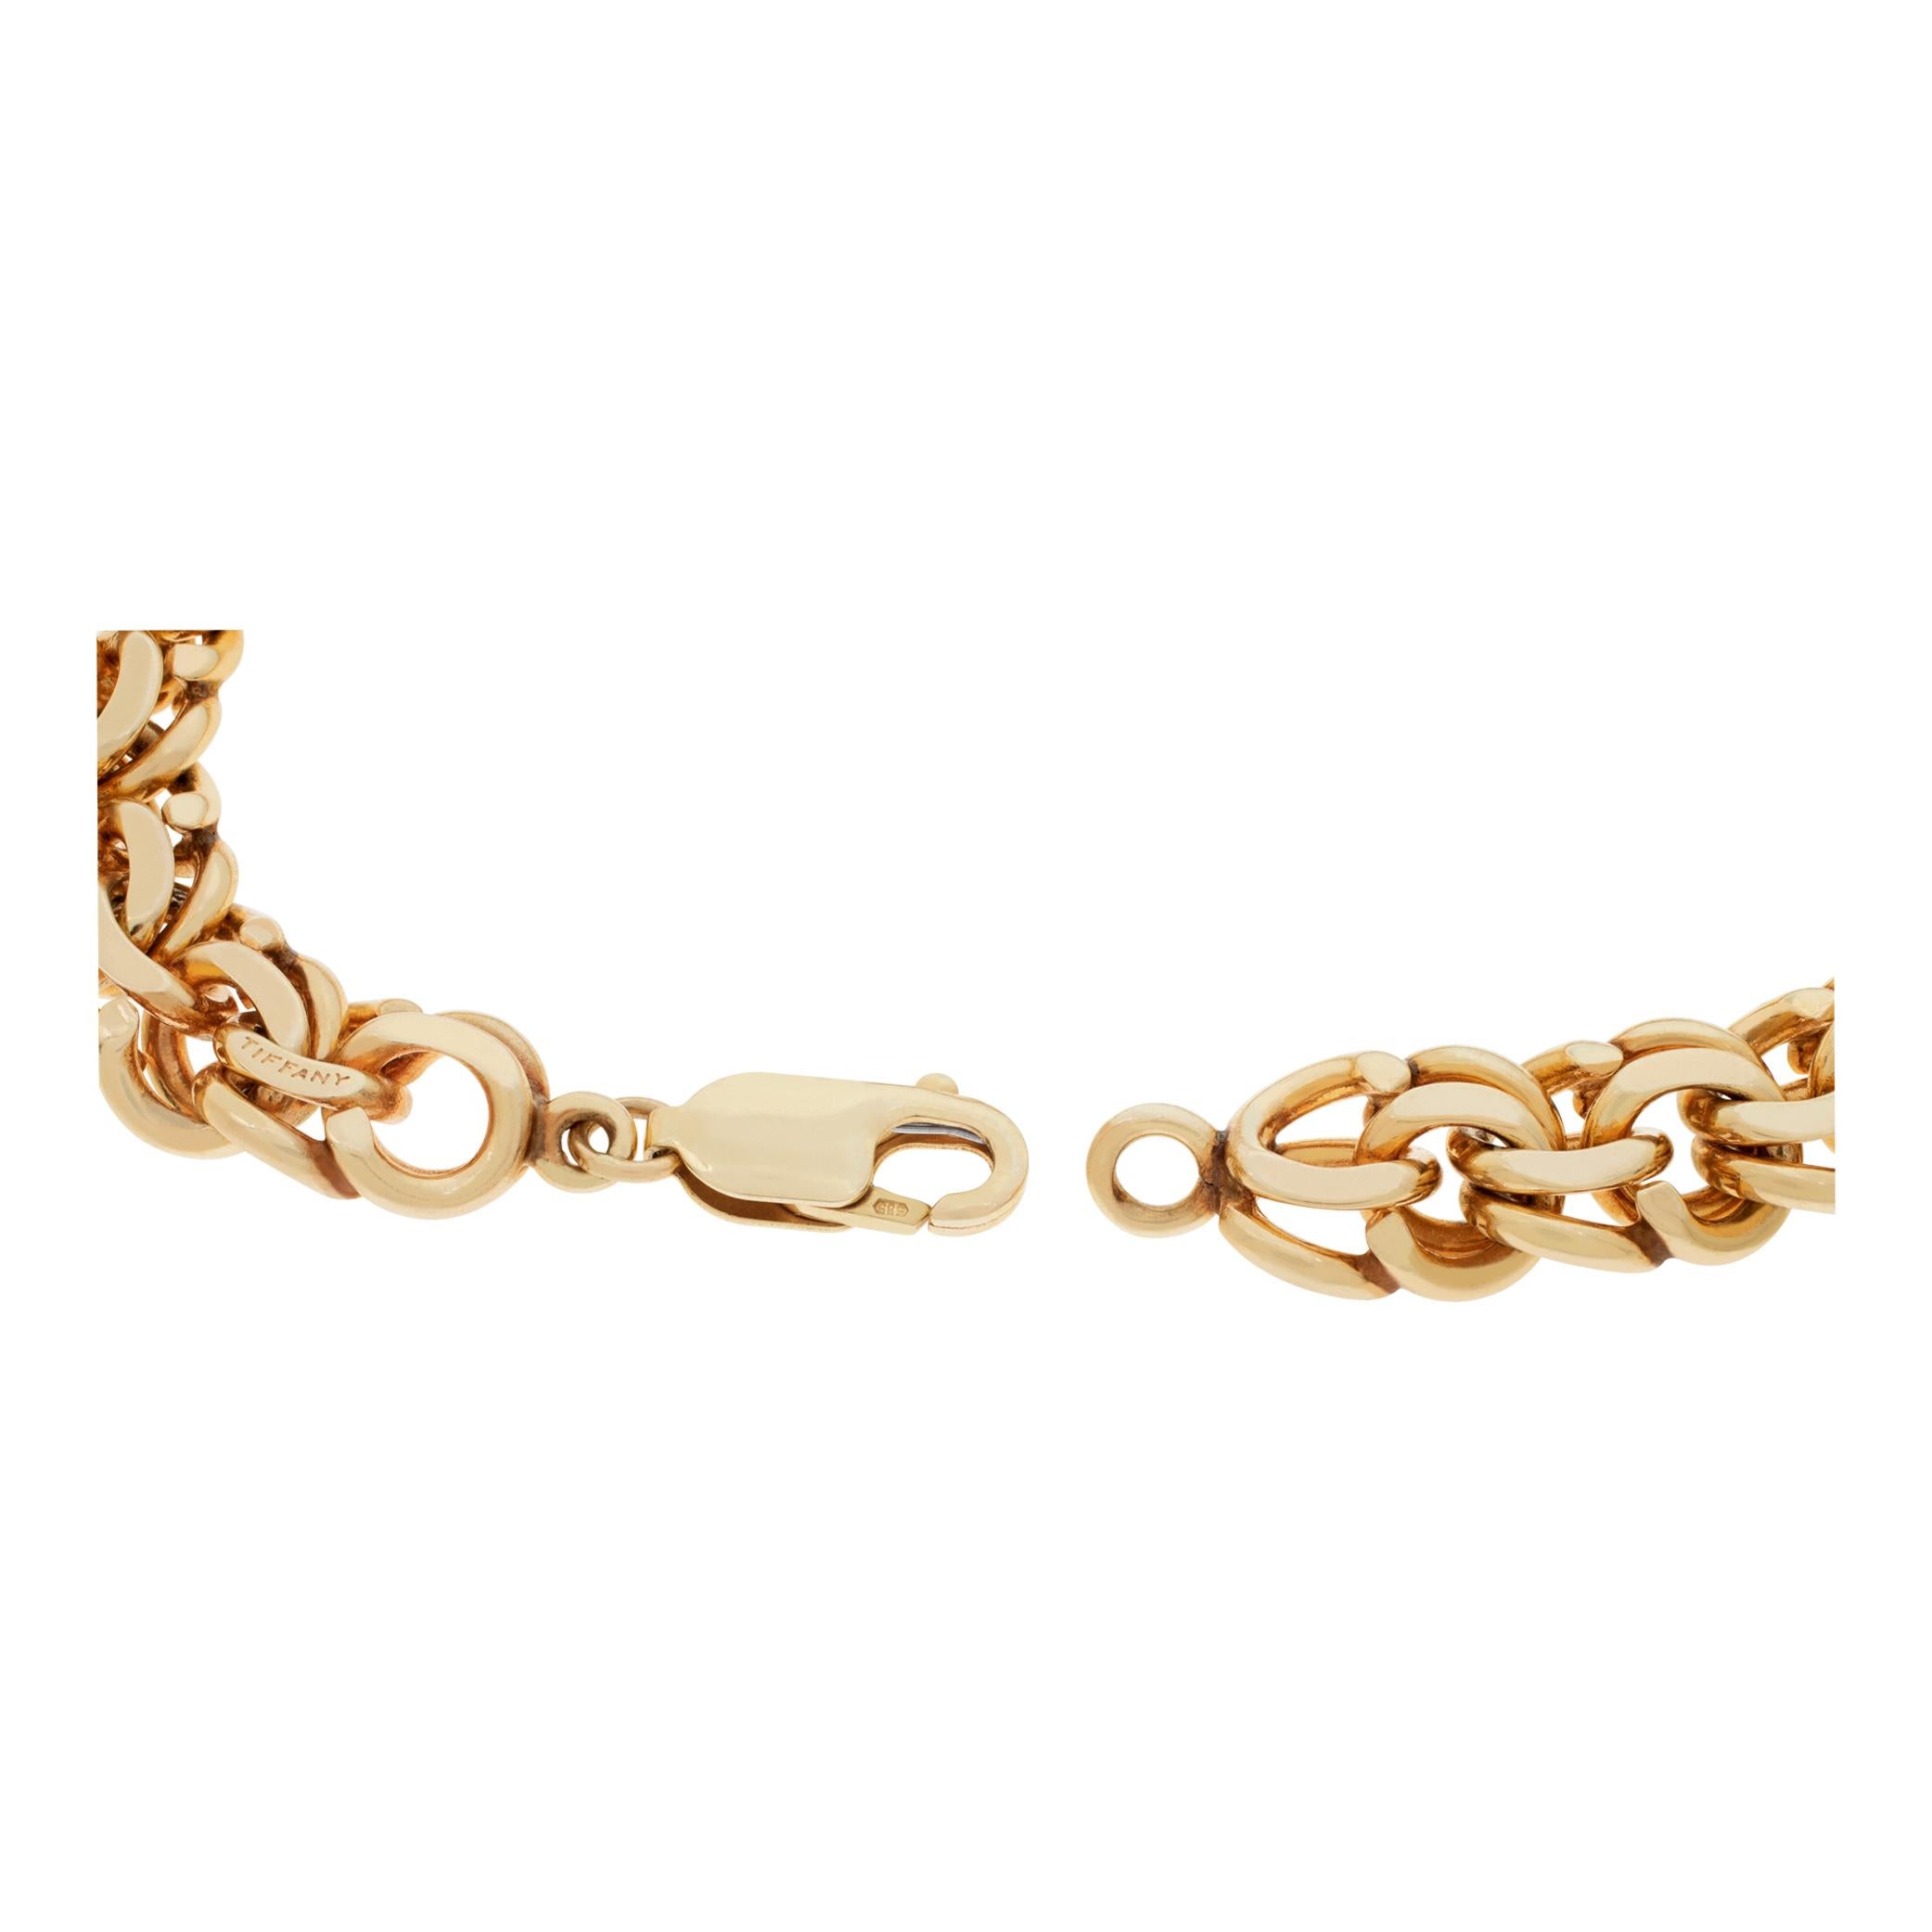 Women's or Men's Rose gold unisex intricate chain bracelet